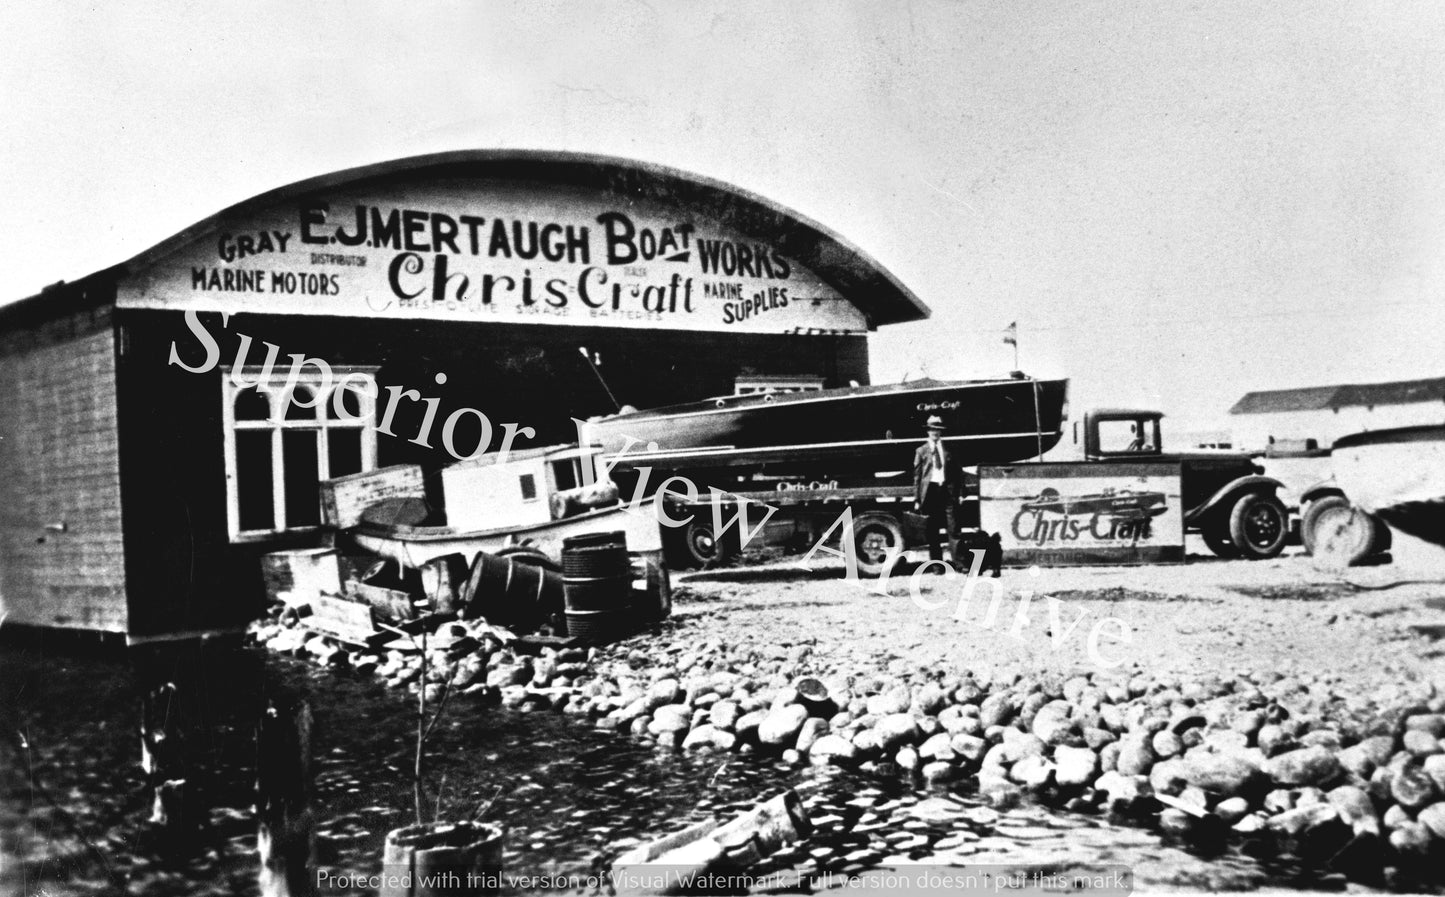 Vintage Chris Craft Boat First Chris Craft Dealership E.J. Mertaugh Boat Works